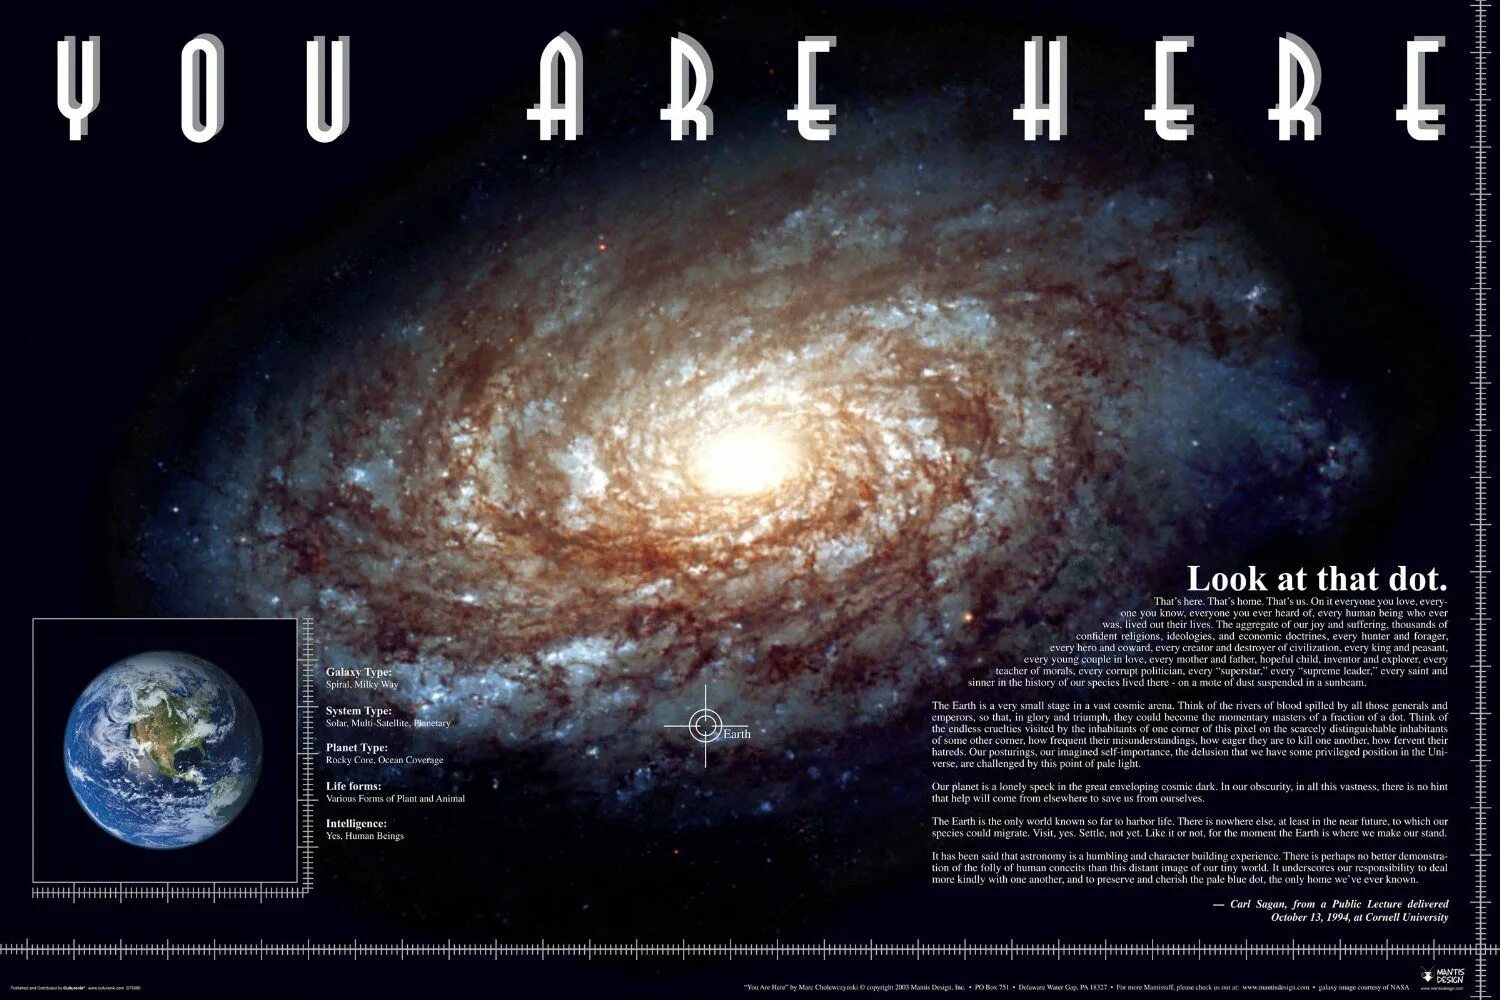 Space here. Постер космос. Постер Галактика. You are here Вселенная. Плакат Галактика.